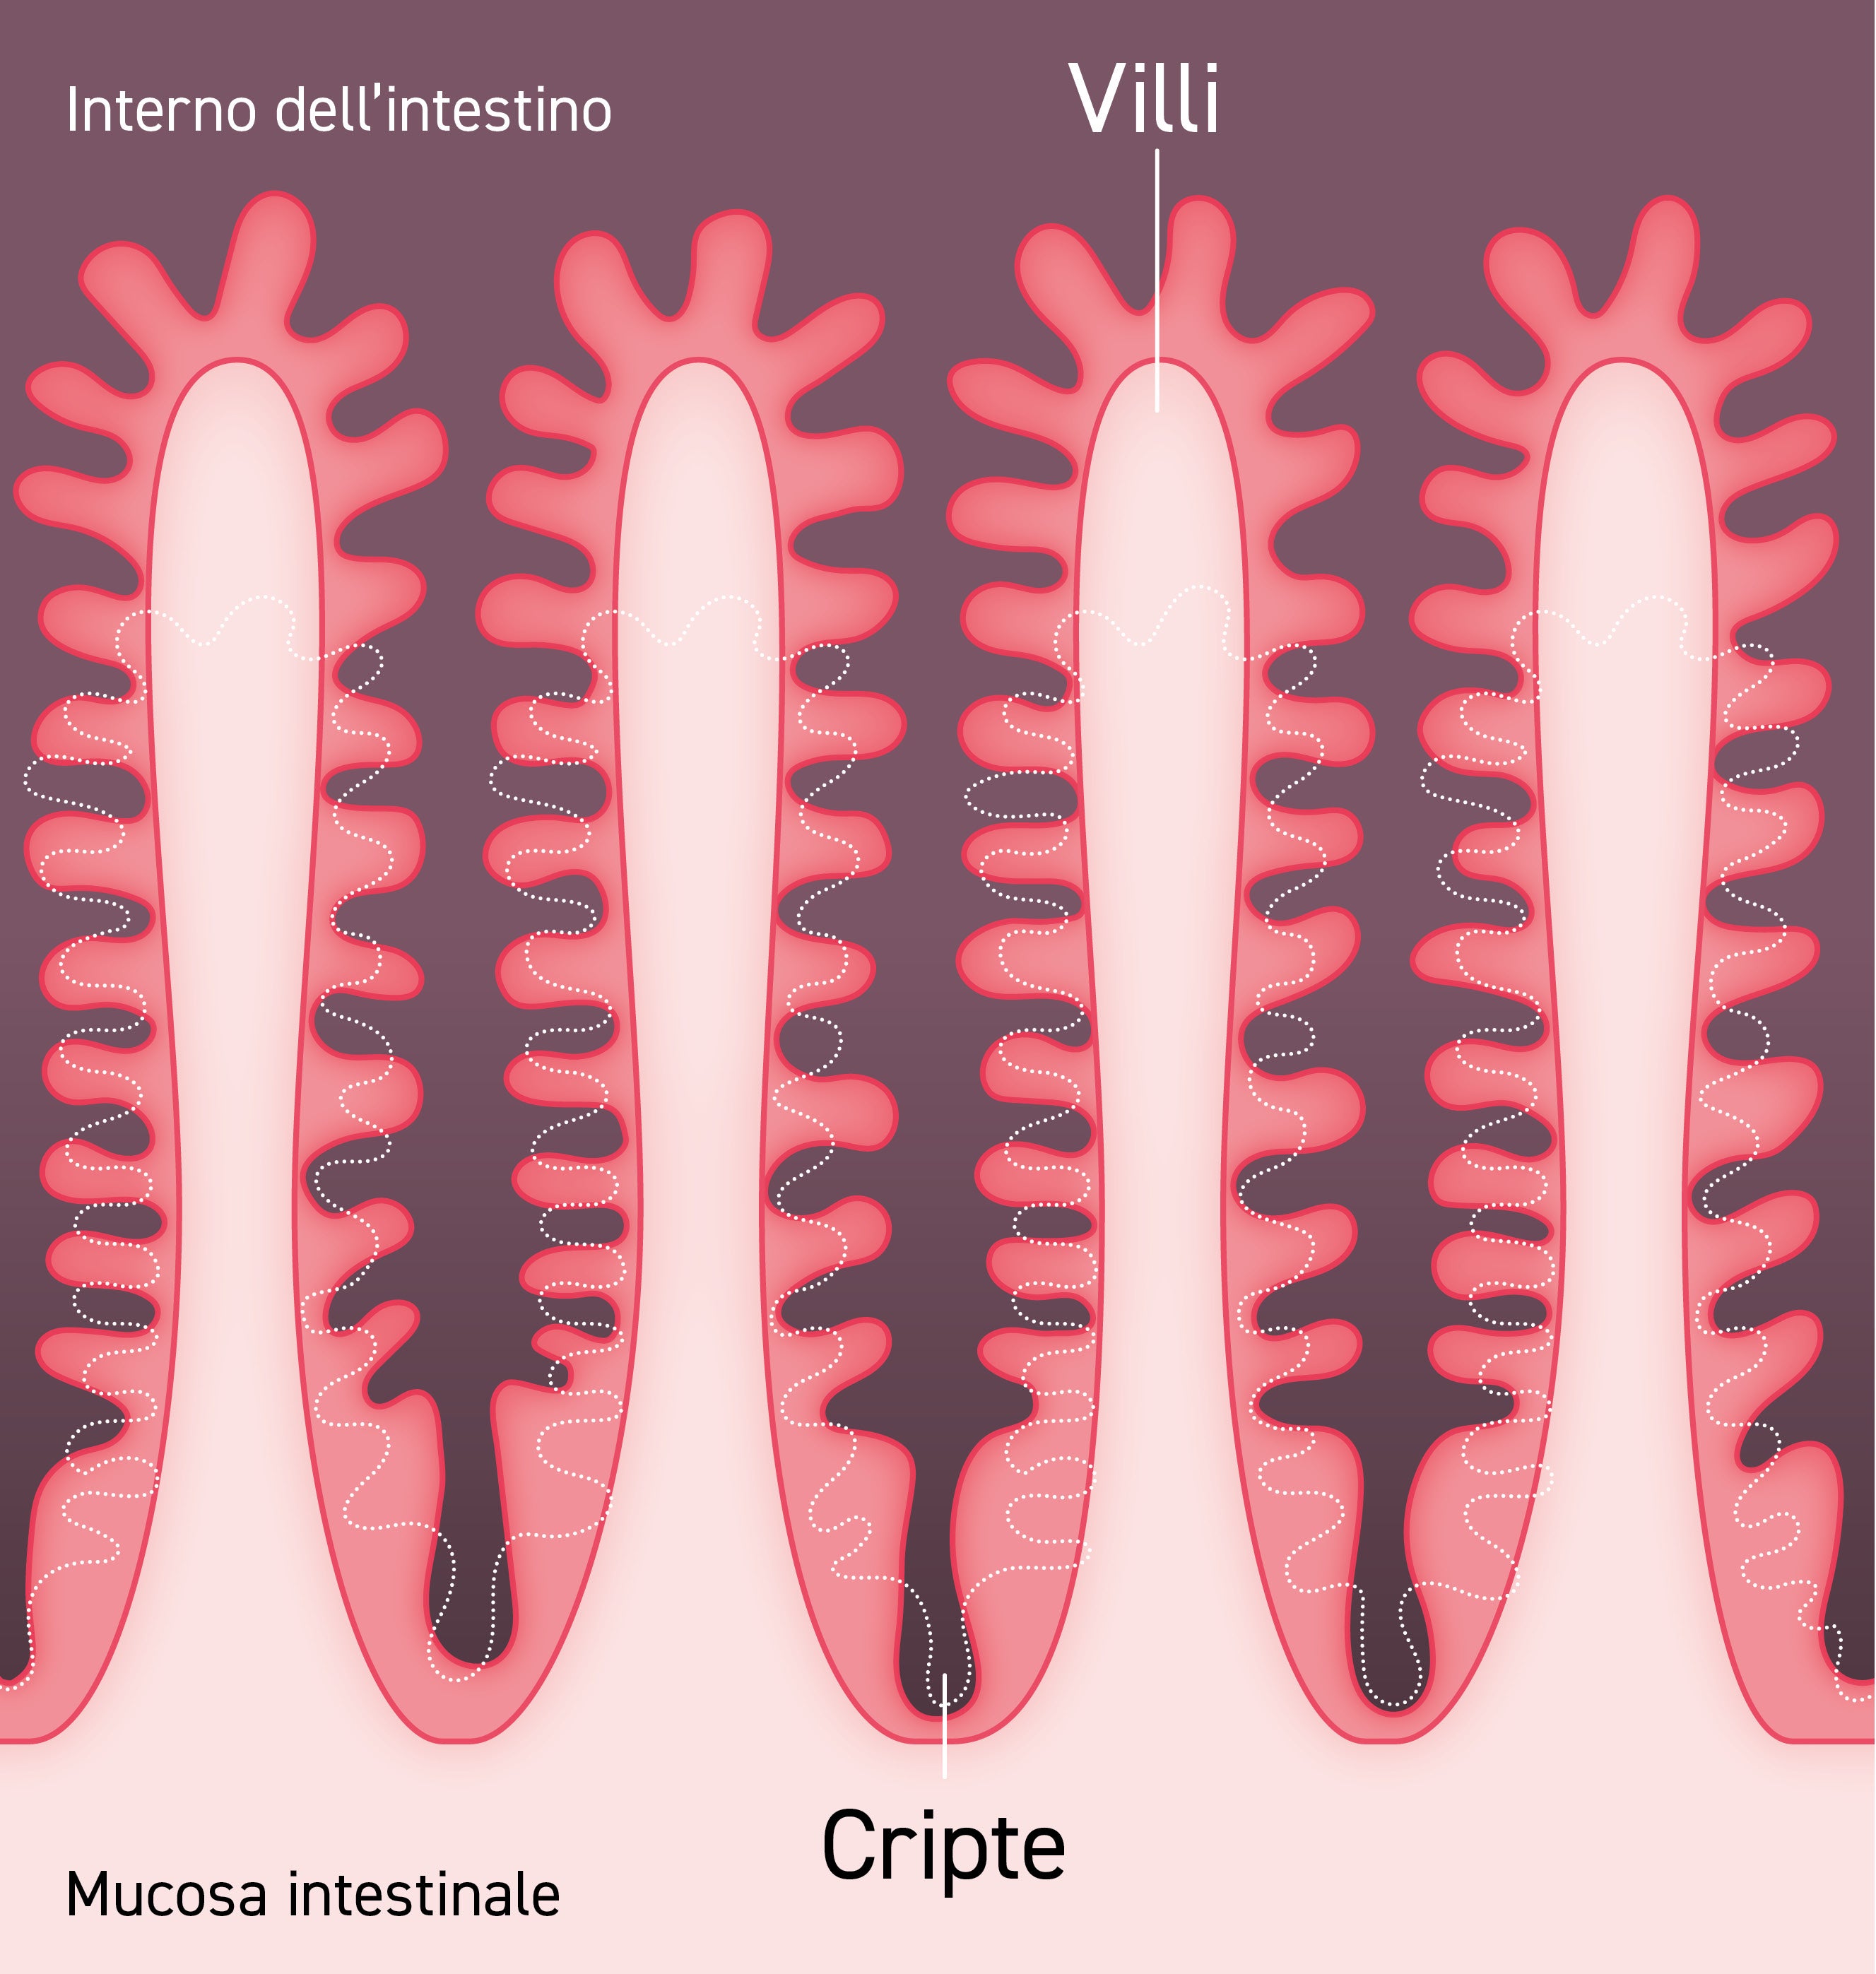 La terapia ormonale GLP-2 puÃ² estendere la superficie della mucosa aumentando la lunghezza dei villi e la profonditÃ  delle cripte. In questo modo si ottiene il miglioramento della capacitÃ  dellâintestino di assorbire i nutrienti anche in una sezione intestinale ridotta.